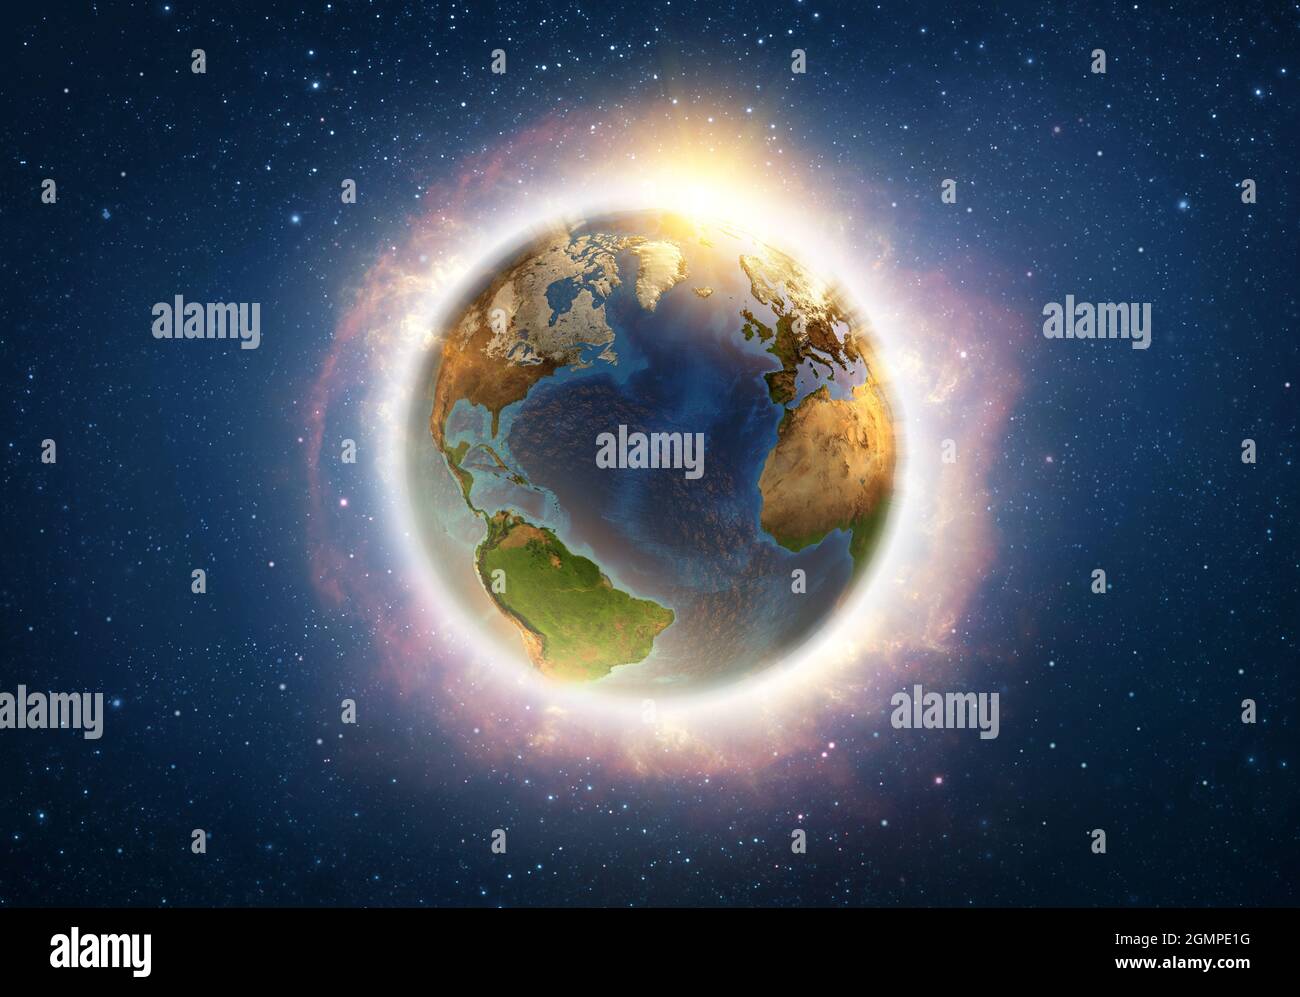 Globale Erwärmung auf dem Planeten Erde, Ende der Welt aus dem Weltraum illustriert. 3D-Illustration - Elemente dieses Bildes, die von der NASA eingerichtet wurden. Stockfoto